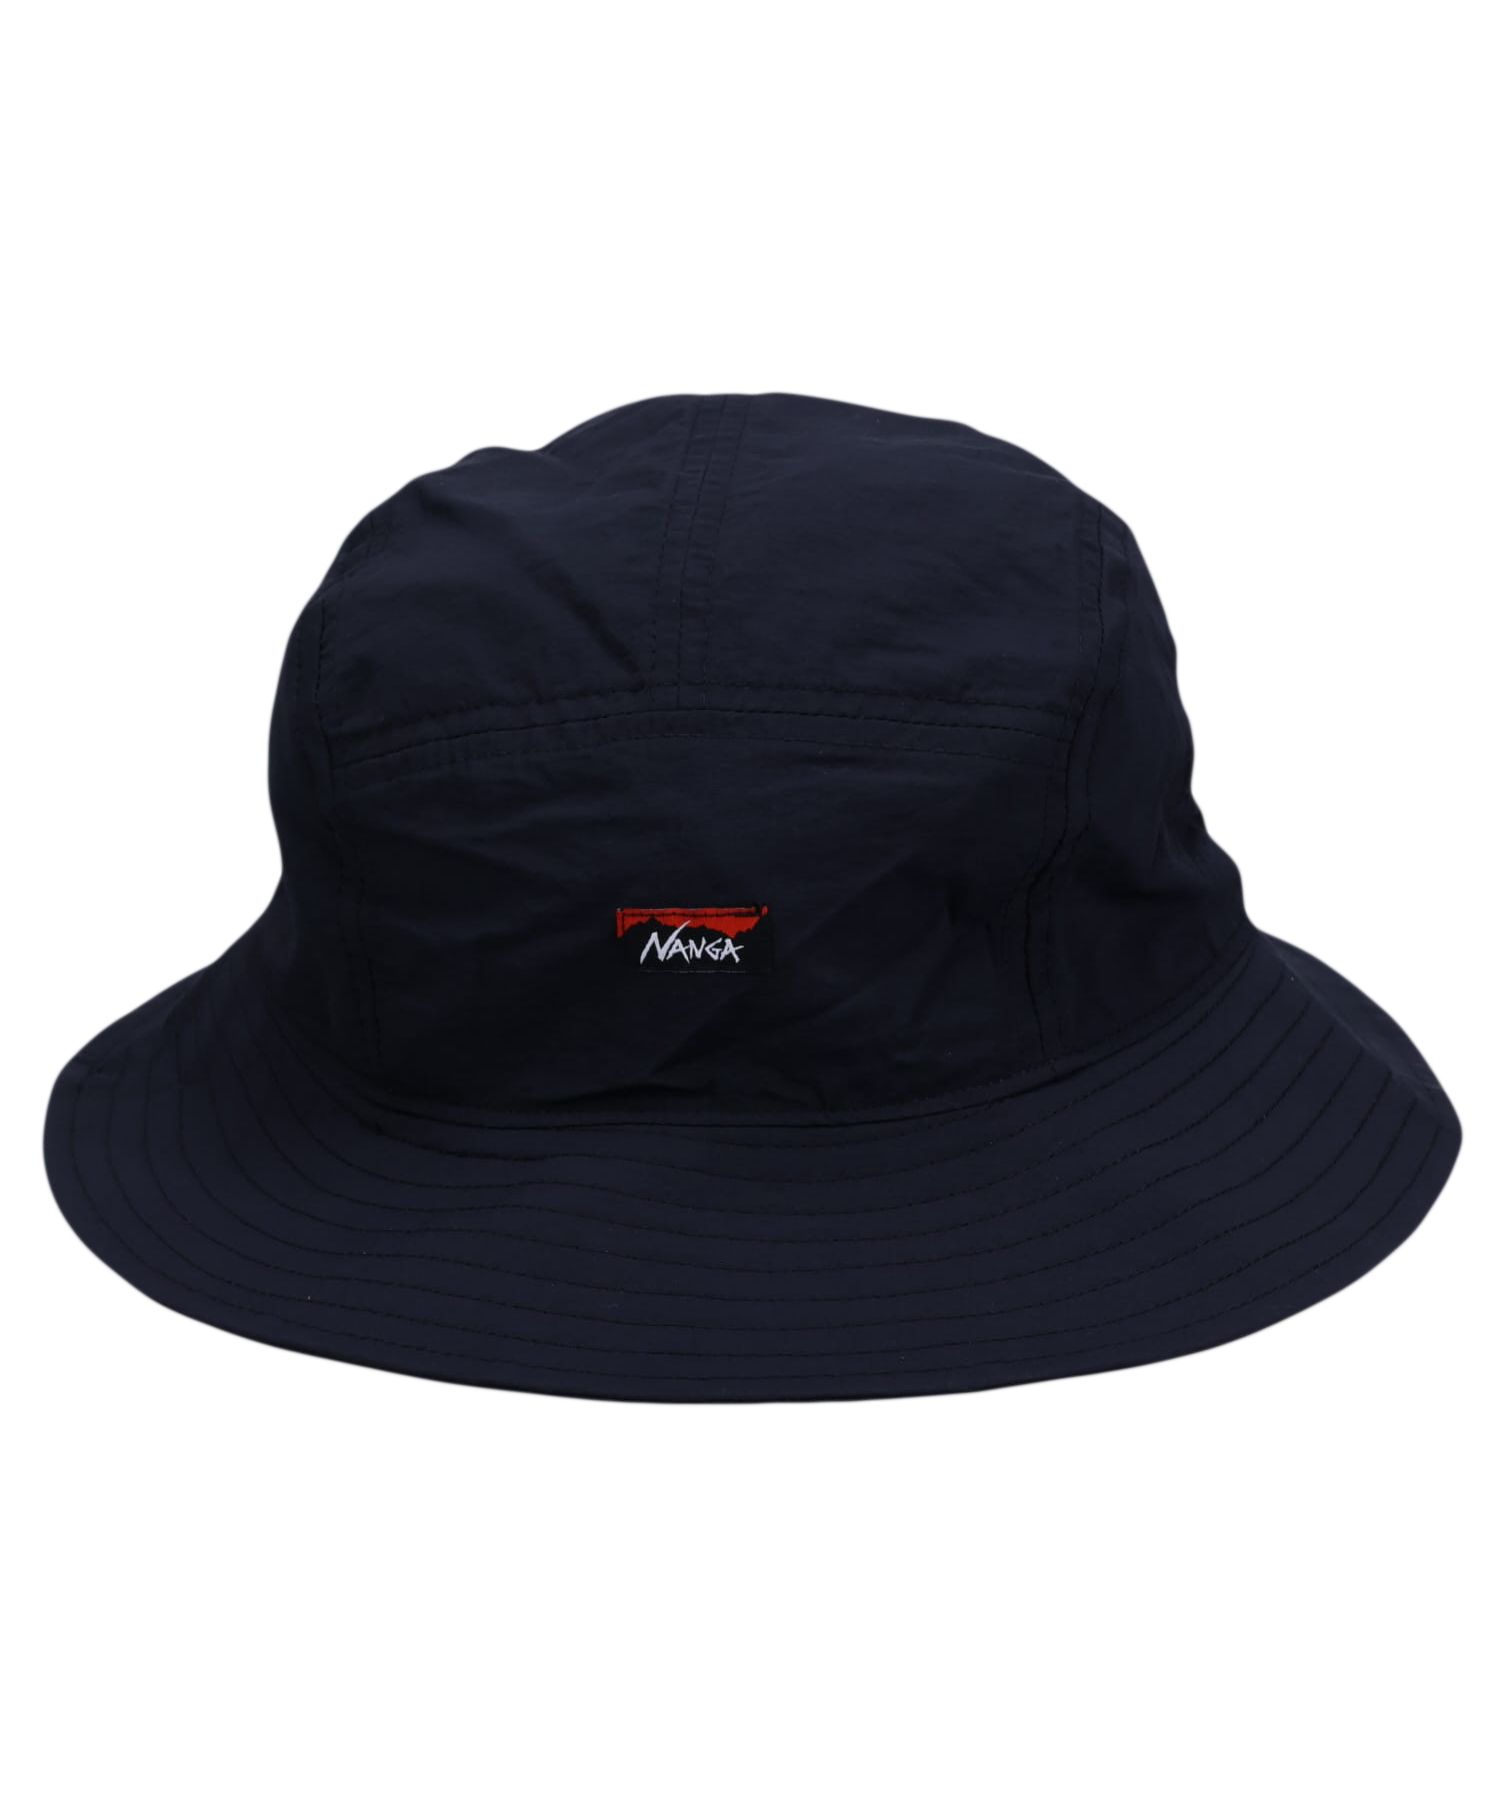 日本最大のブランド ONE PIECE×NANAGA サンシェードハット - 帽子